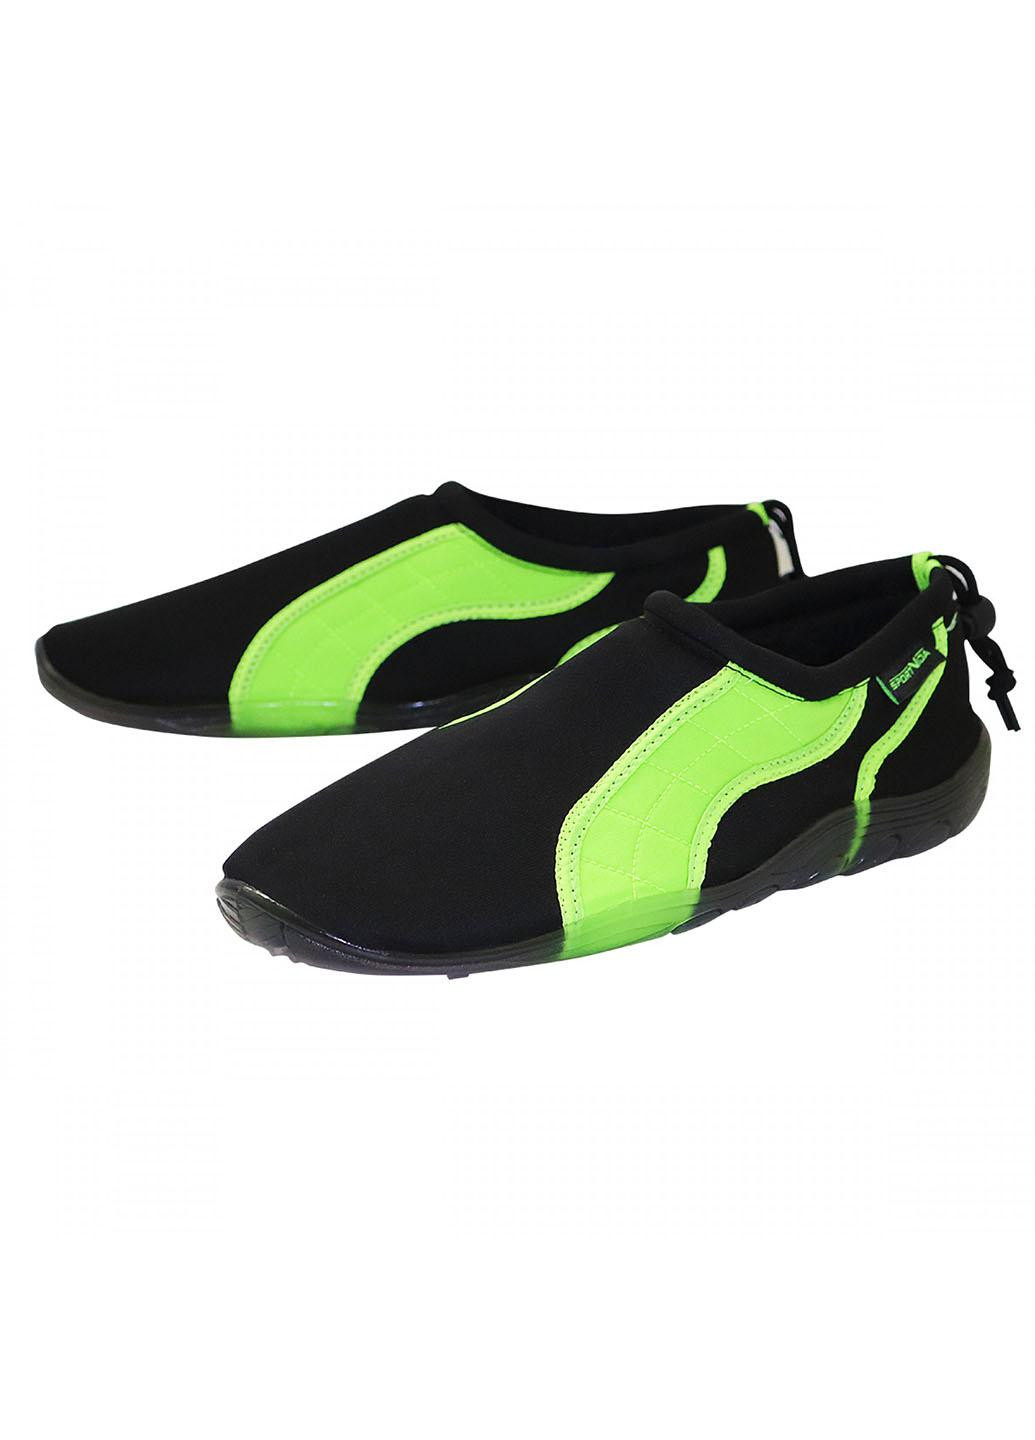 Обувь для пляжа и кораллов (аквашузы) SV-GY0004-R43 Size 43 Black/Green SportVida (258486771)